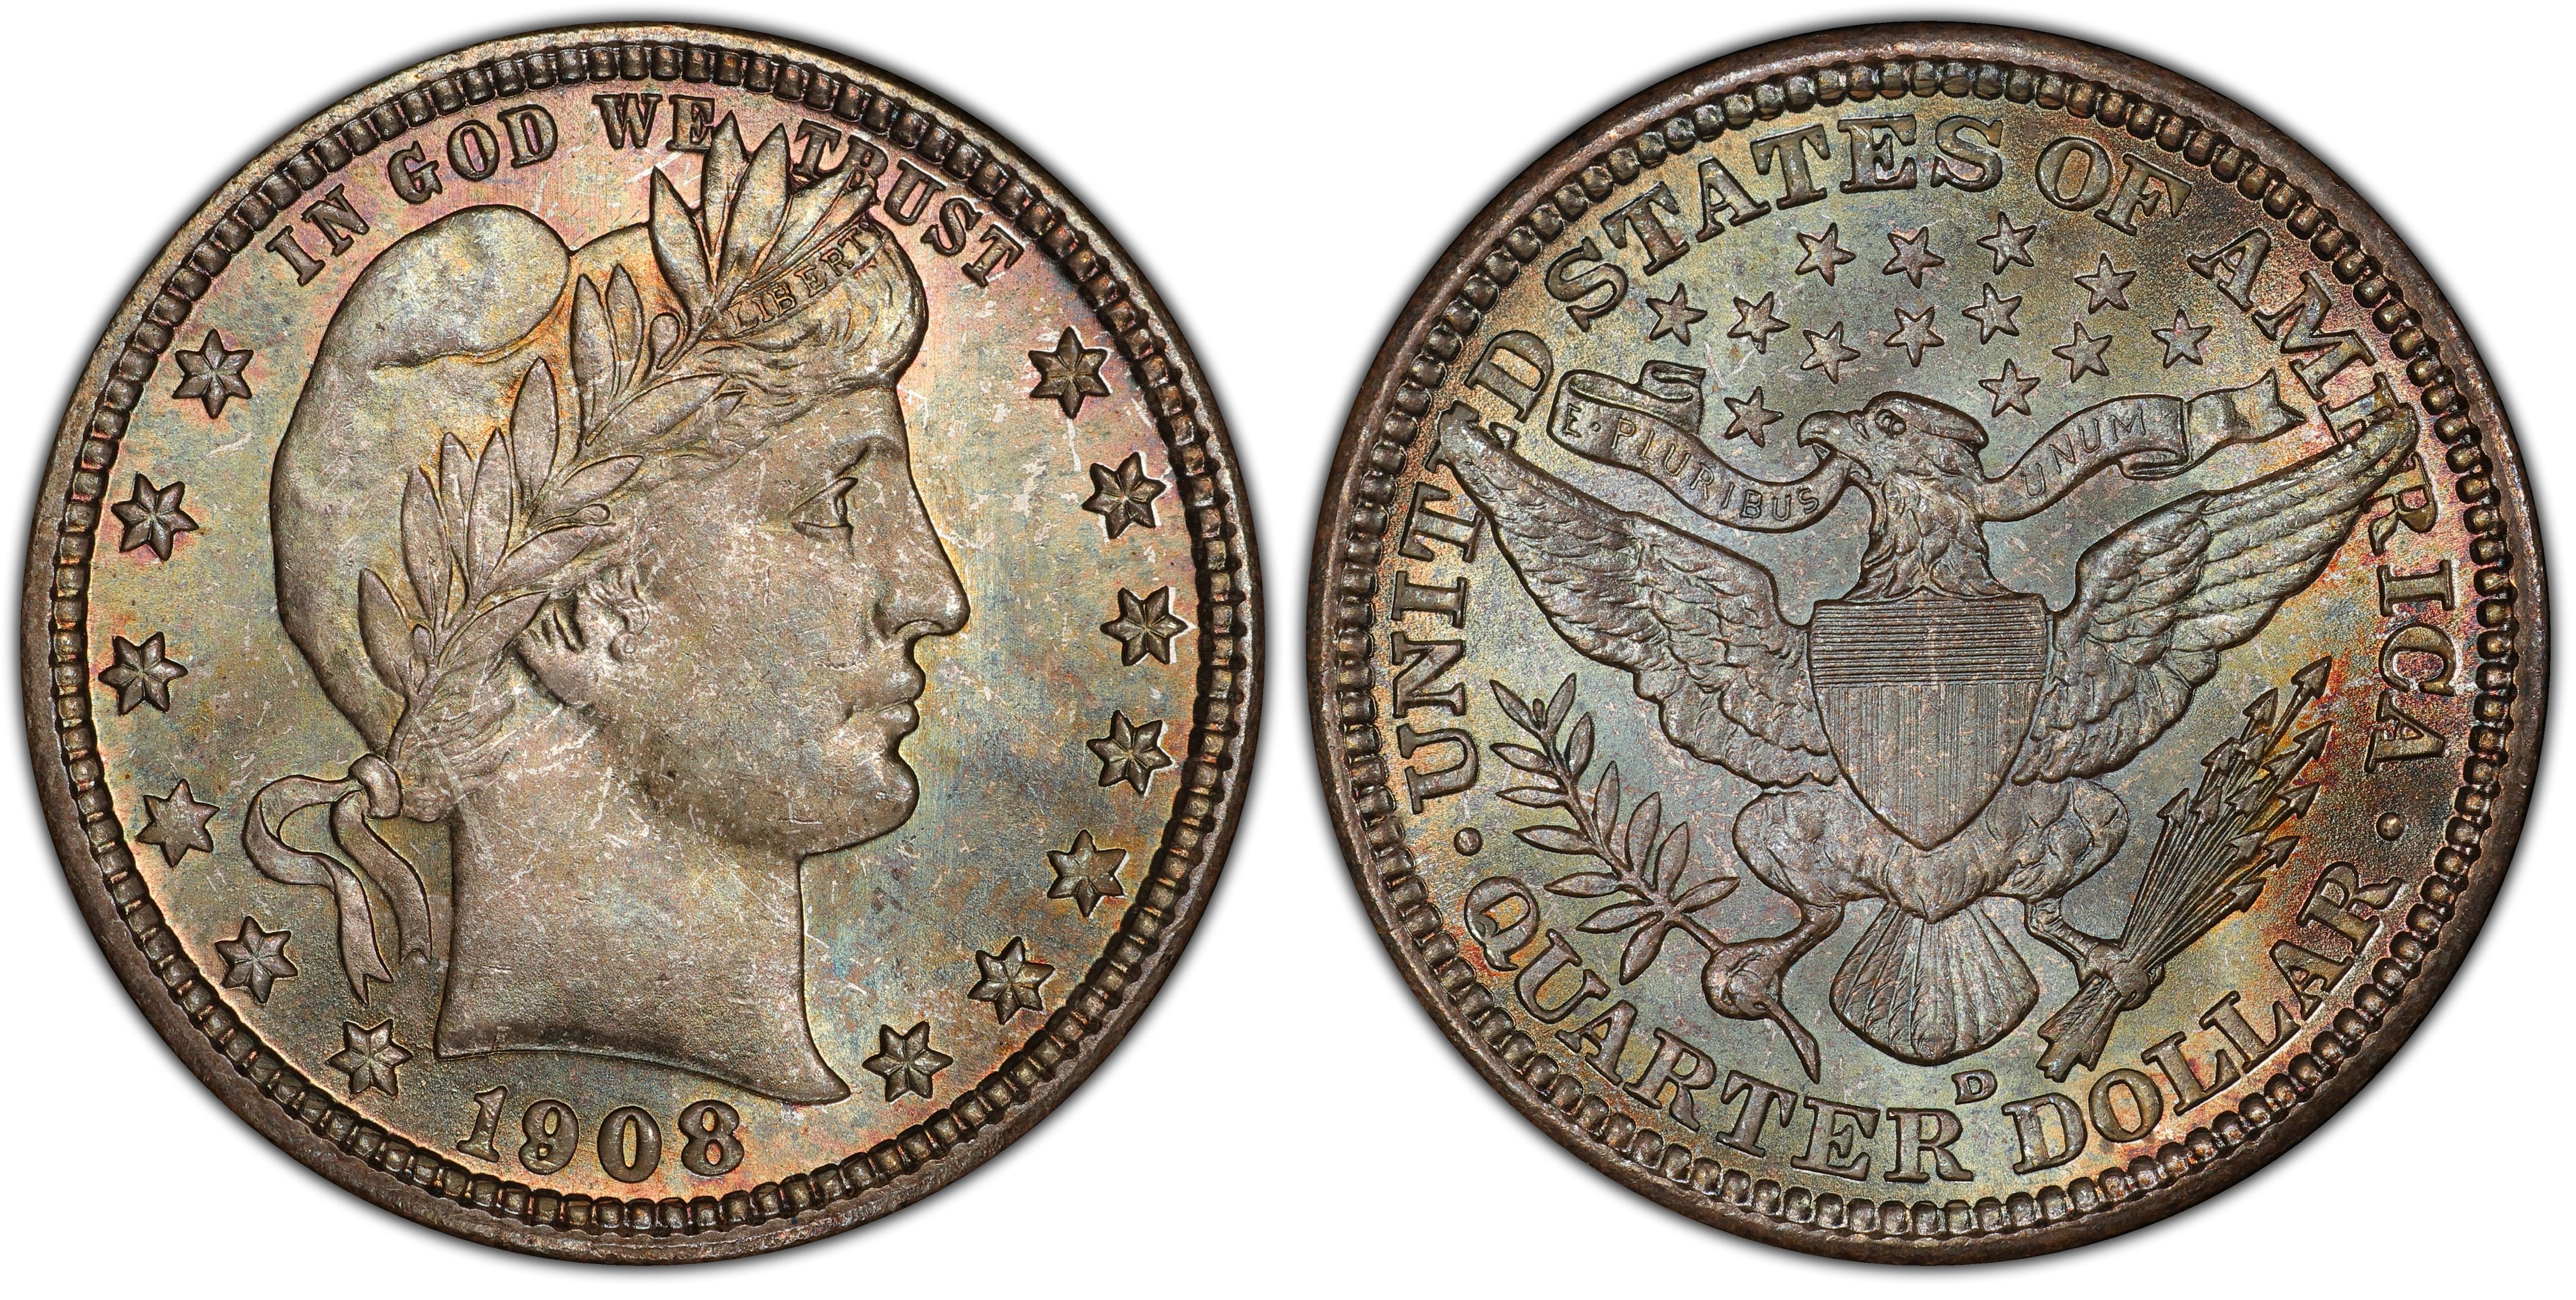 1908 D 25c Barber Silver Quarter Dollar Denver